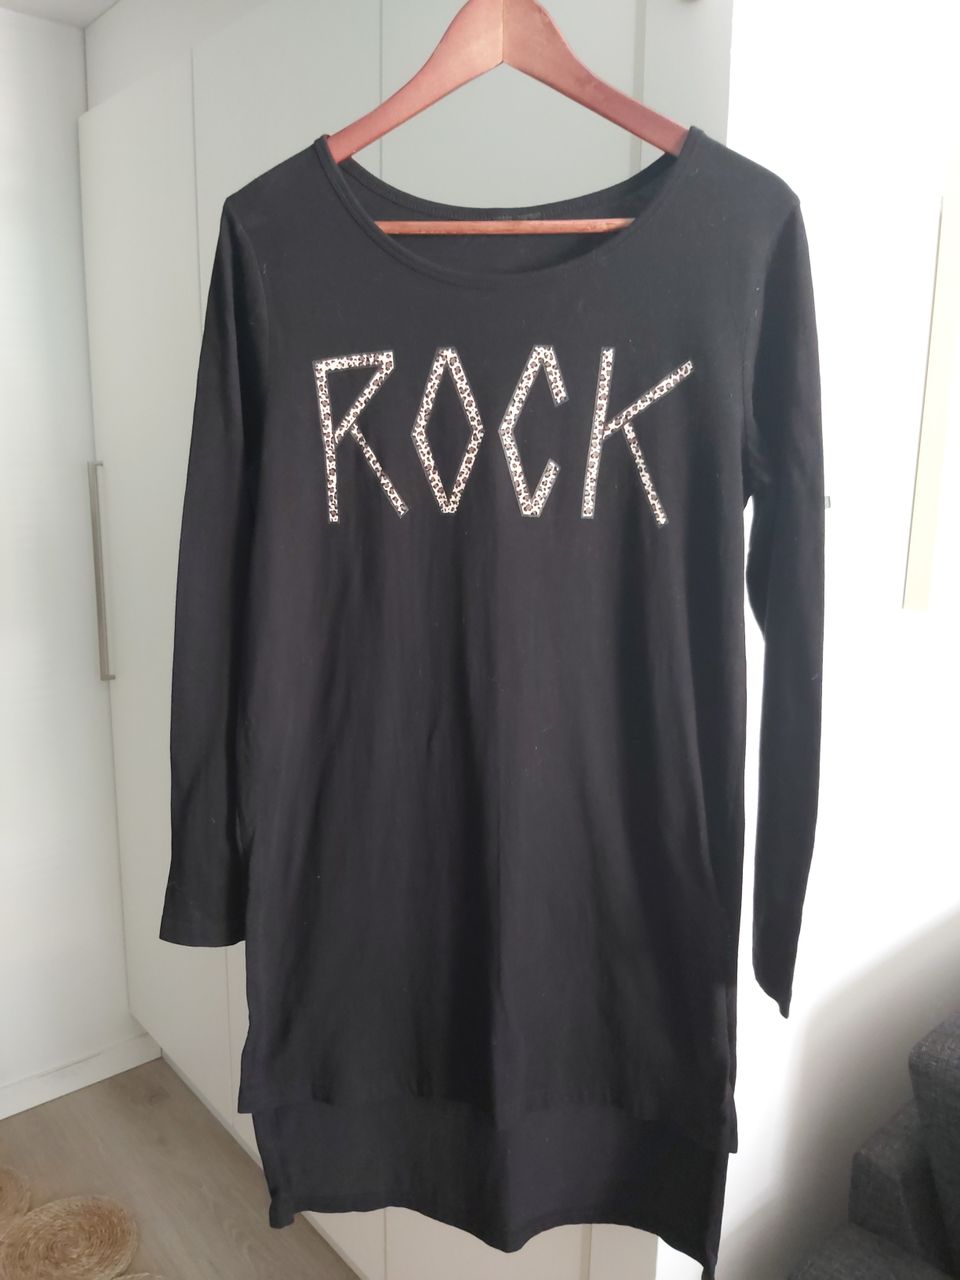 Musta pitkähihainen paita "rock" -painatuksella, koko S.